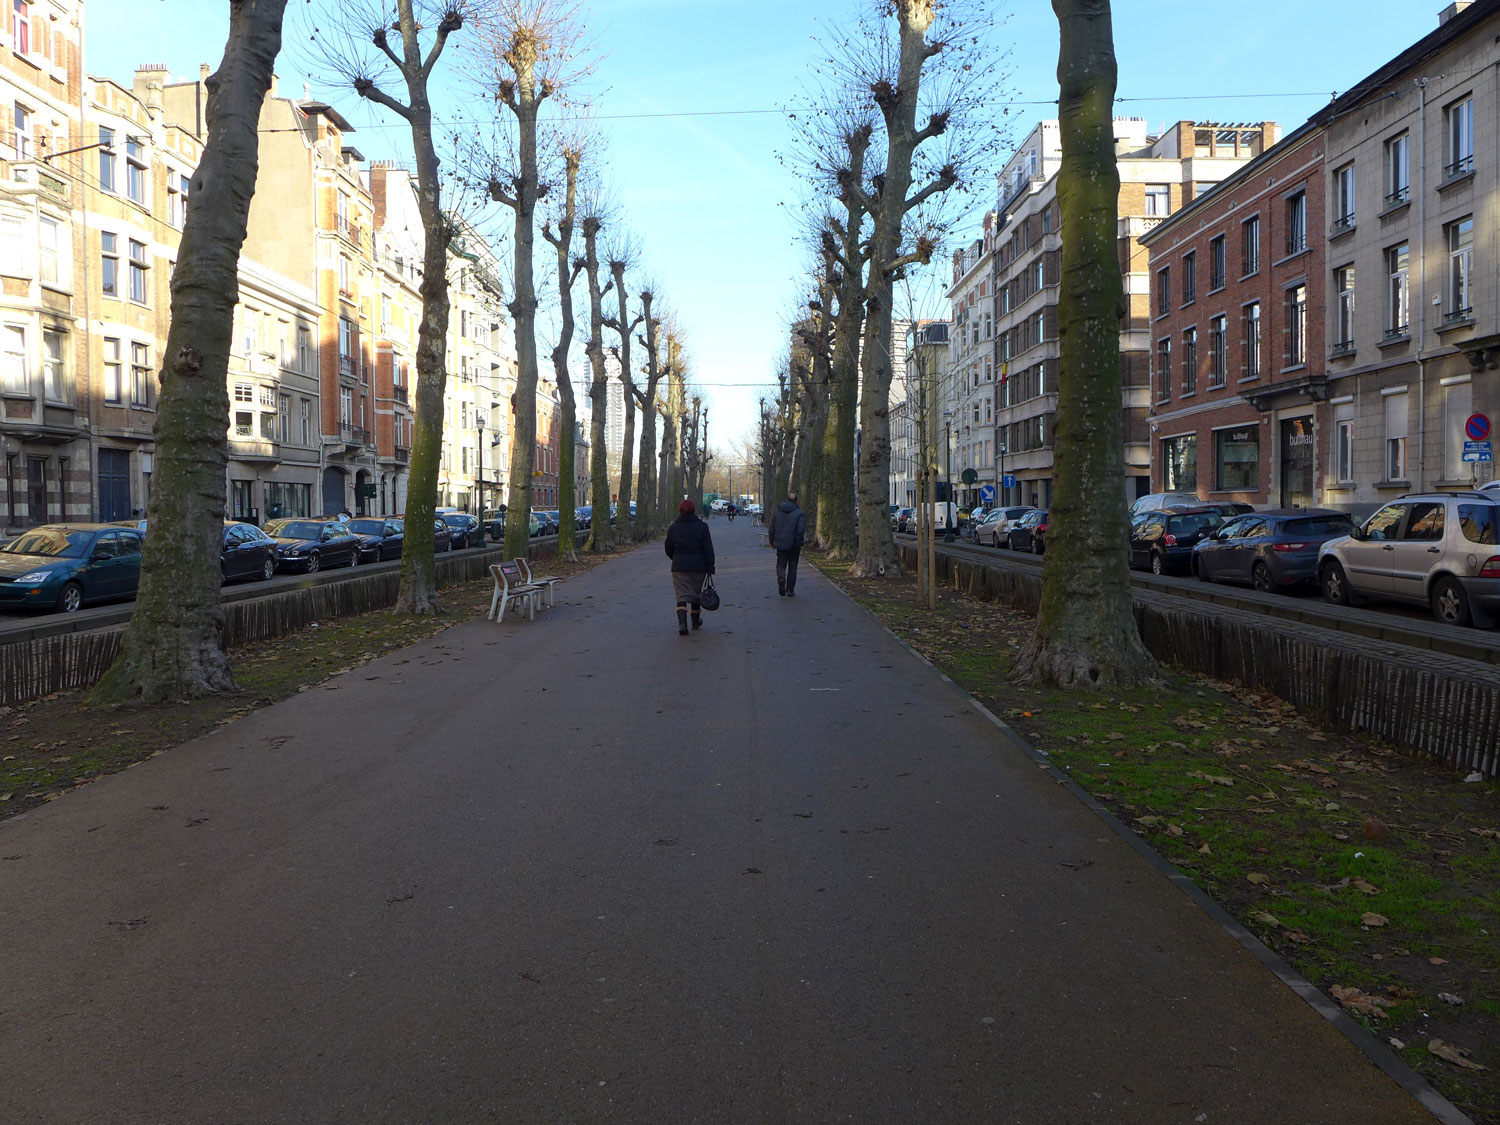 Bruxelles et ses larges trottoirs et avenues où il est agréable de marcher.